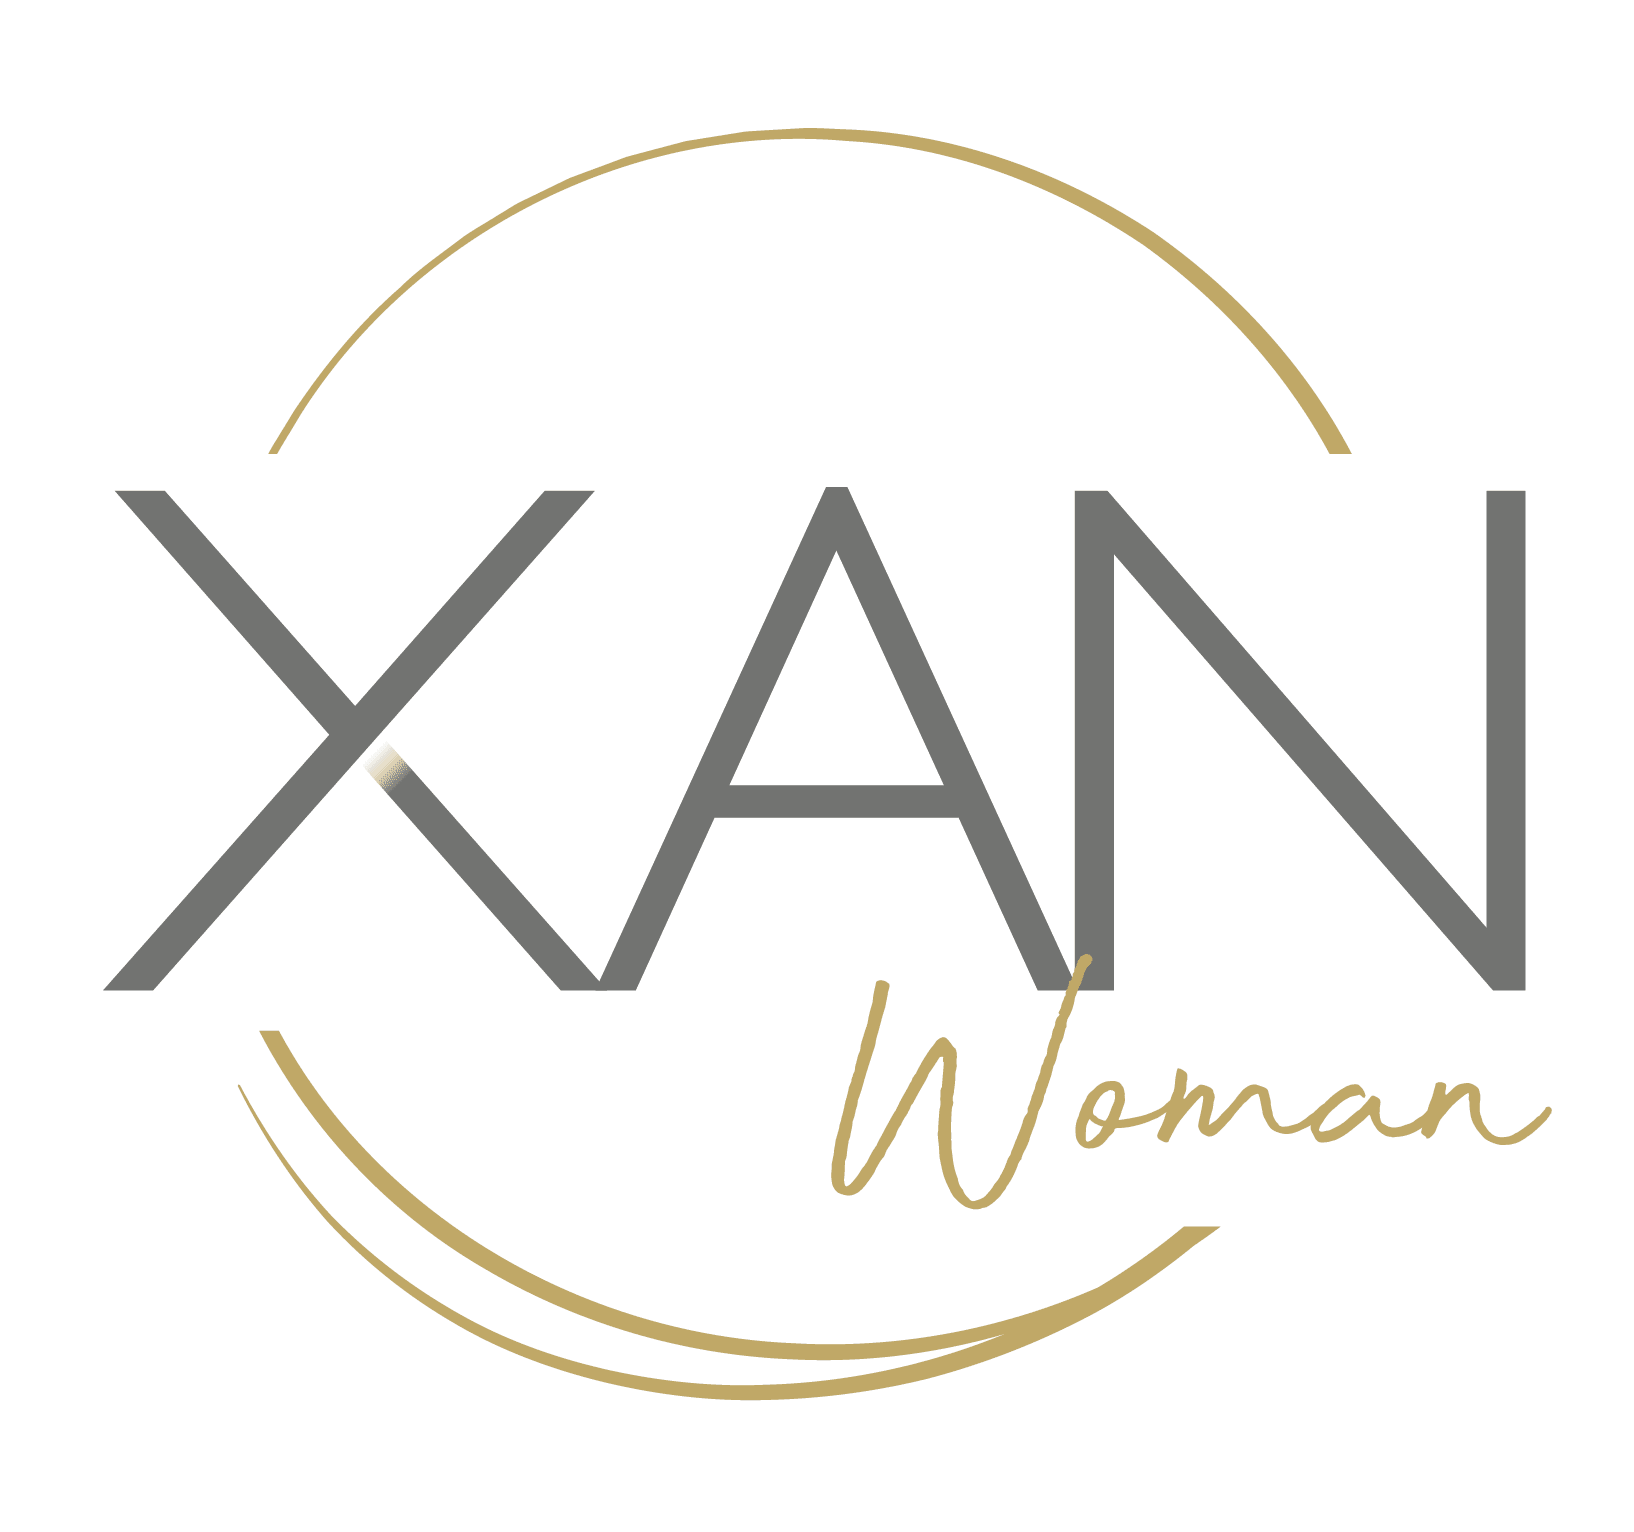 Xan Woman